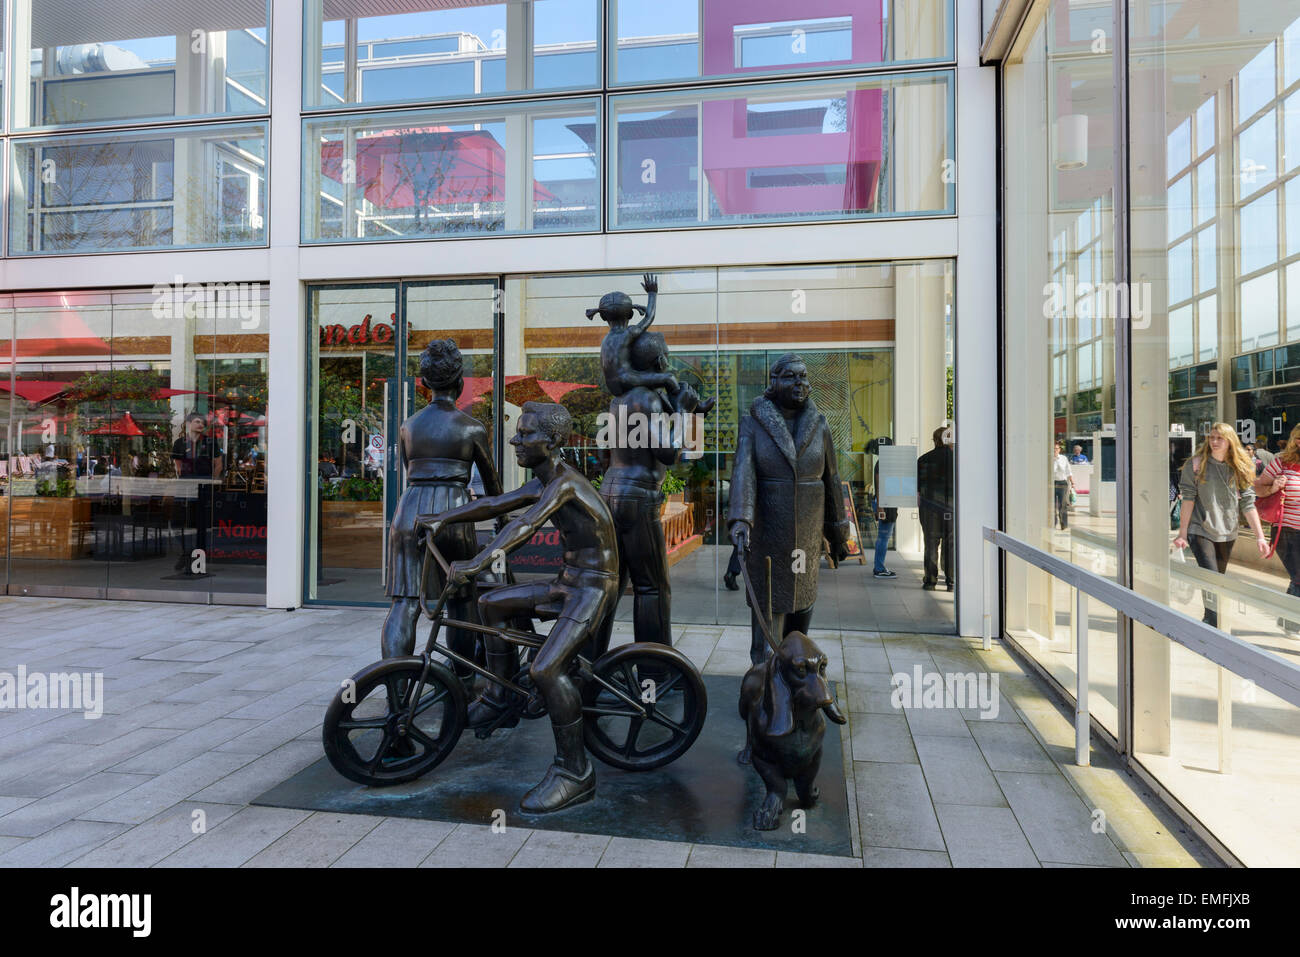 Vox-Pop (The Family) Skulptur von John Clinch in Queens Court Central Milton Keynes. Stockfoto